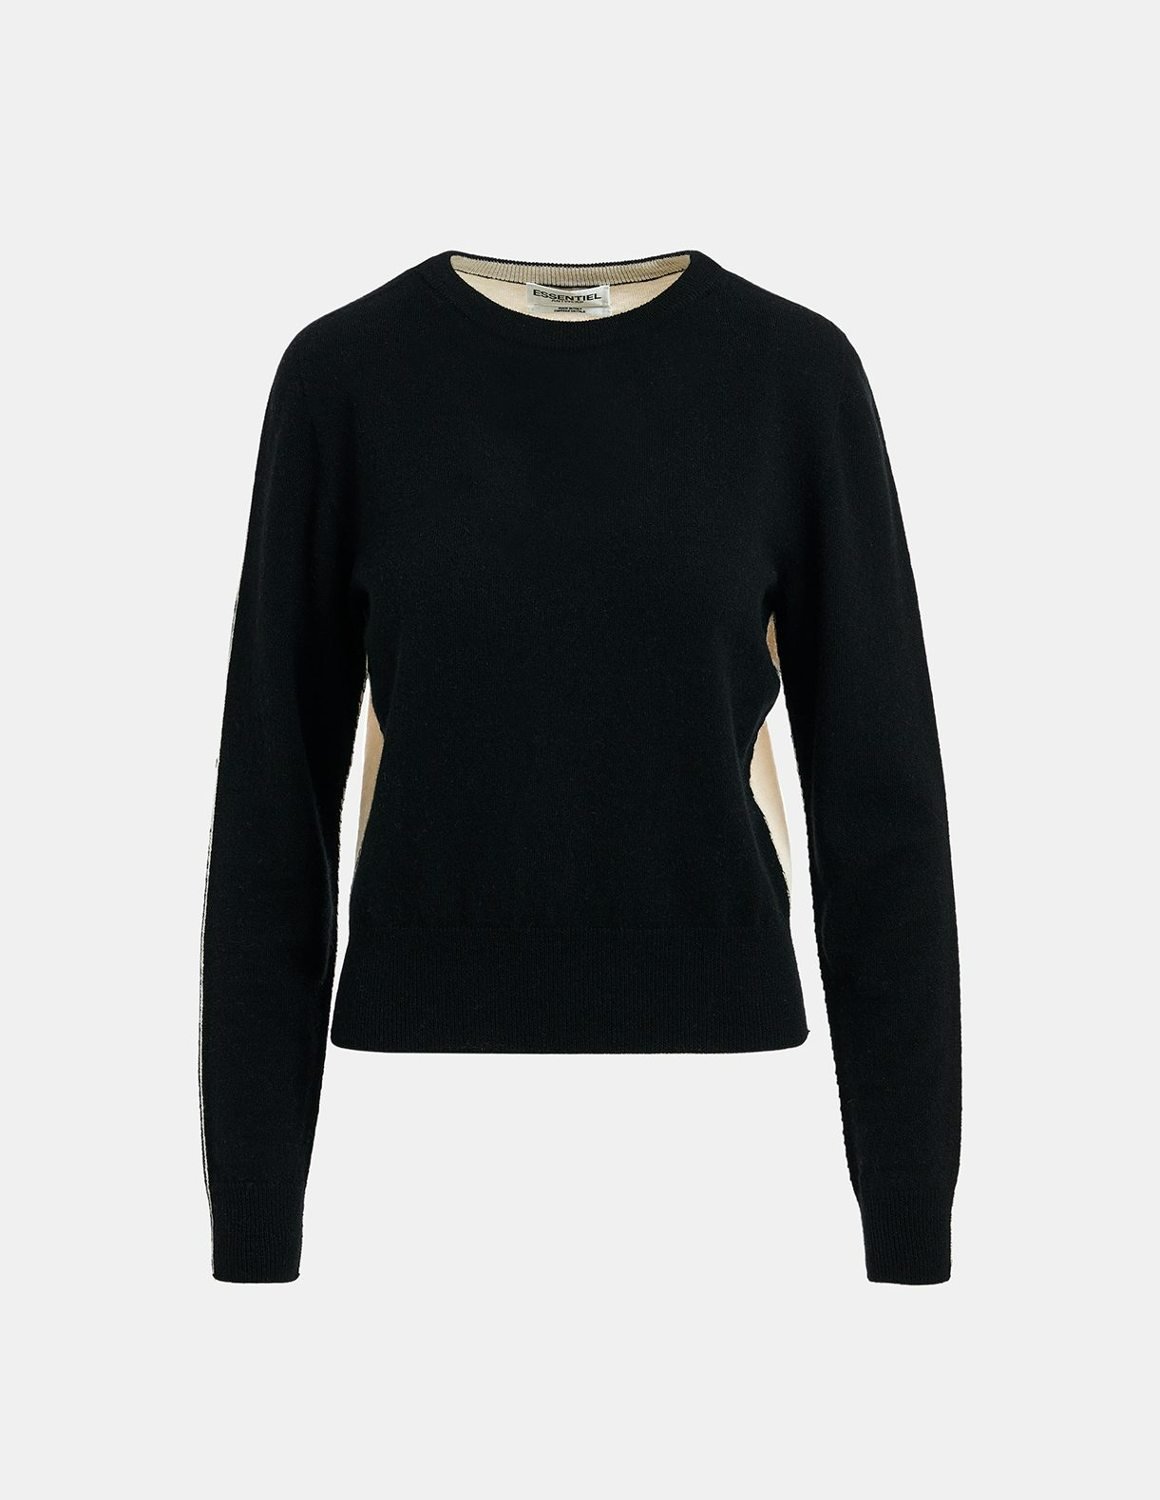 Essentiel Antwerp Elgium knit sweater - black / ecru